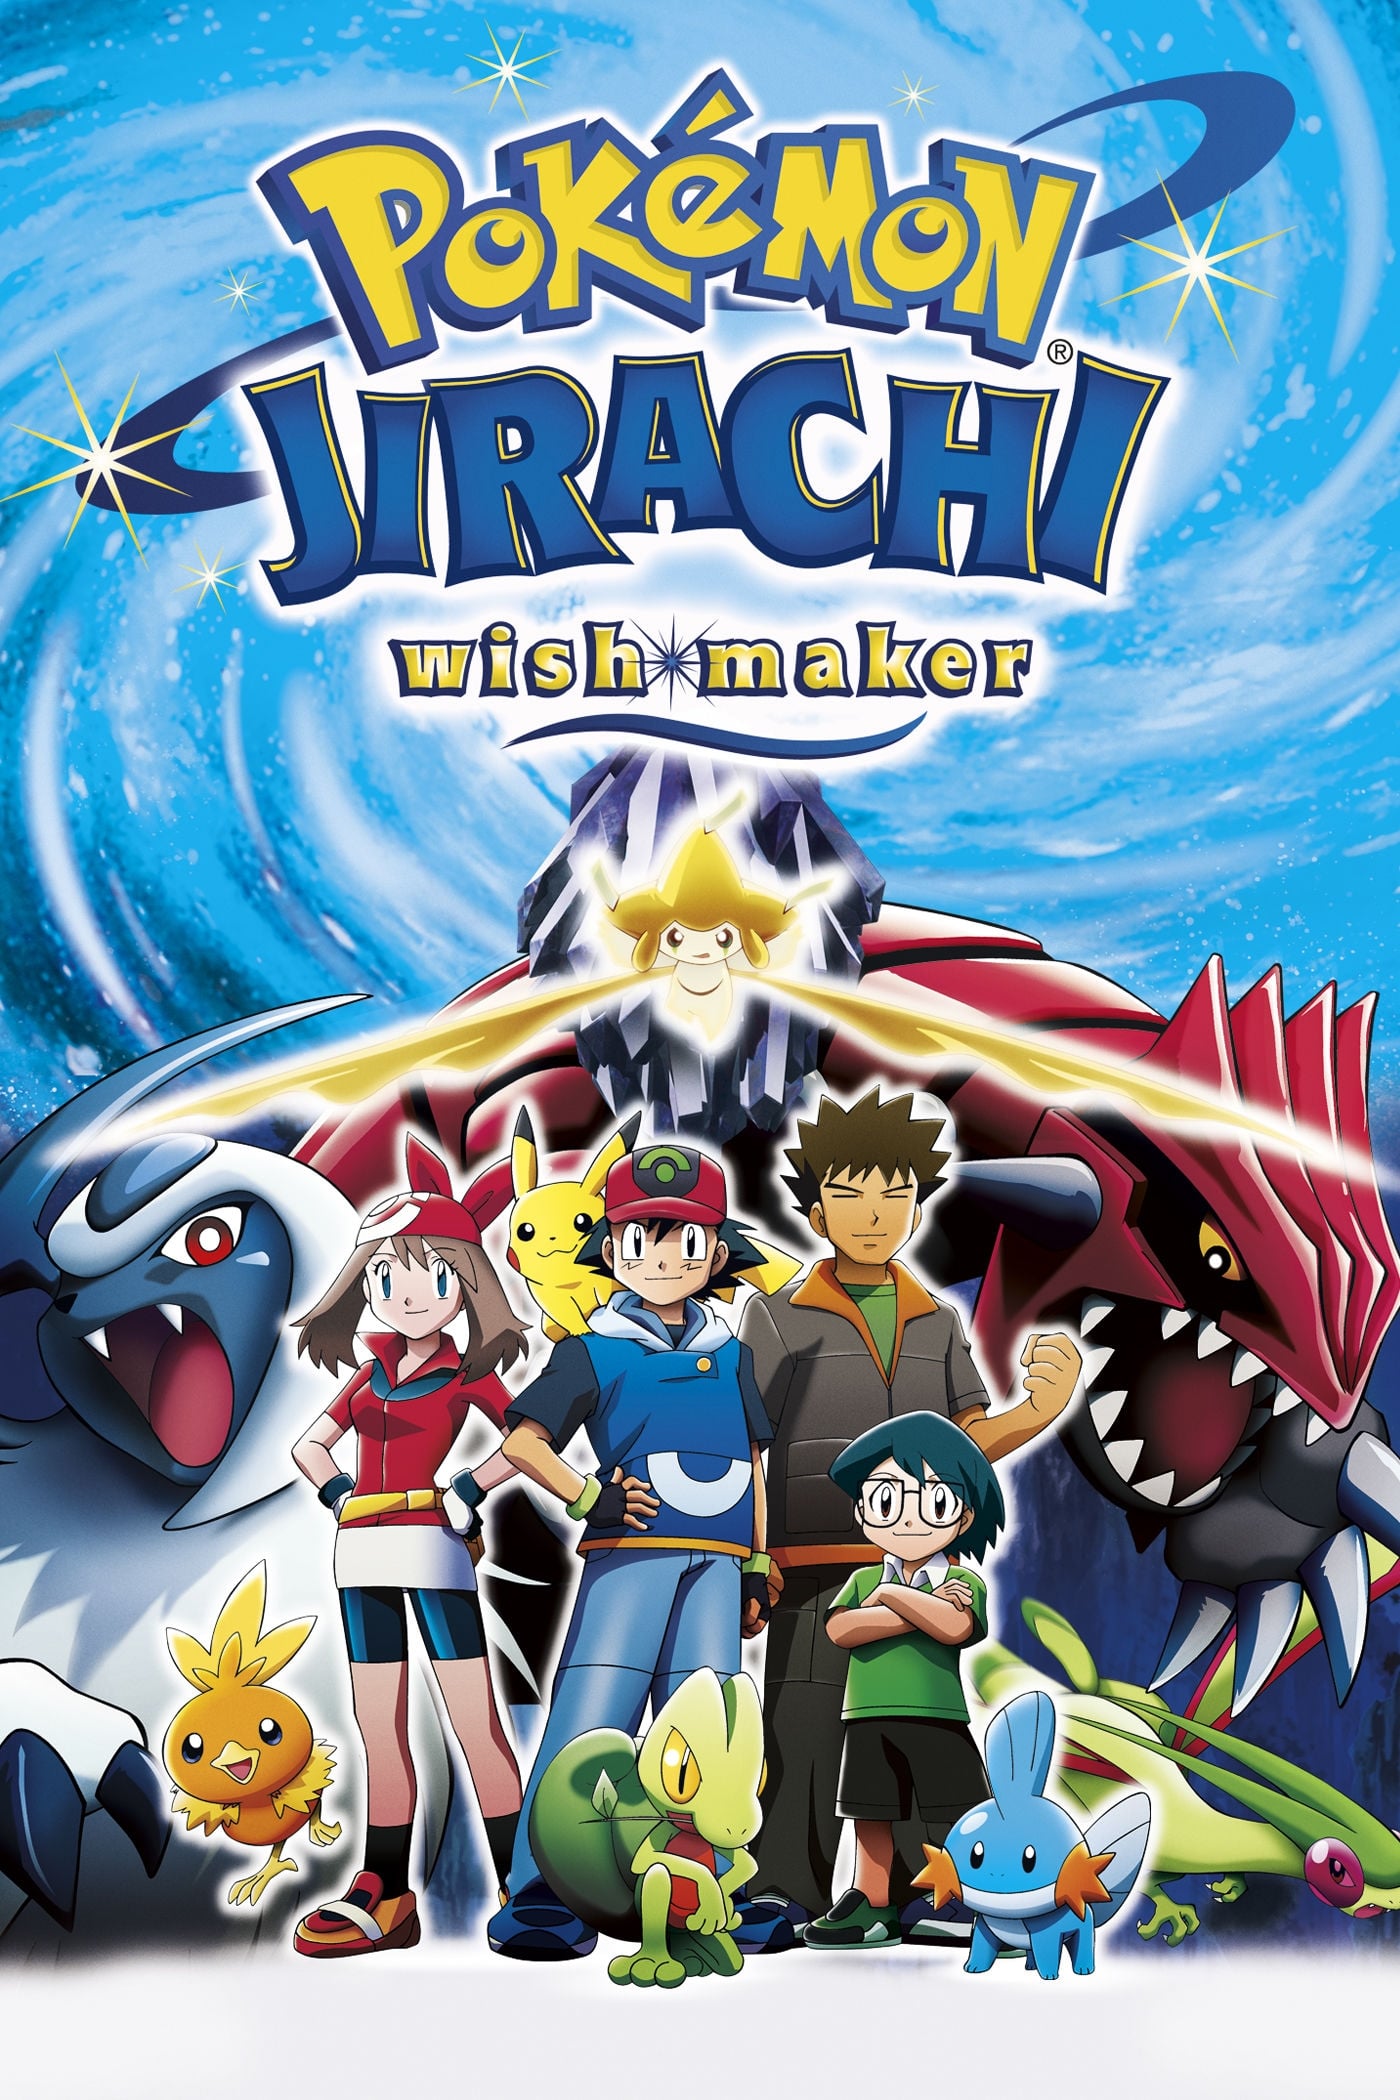 Pokémon 6: Jirachi Wishmaker (2003)